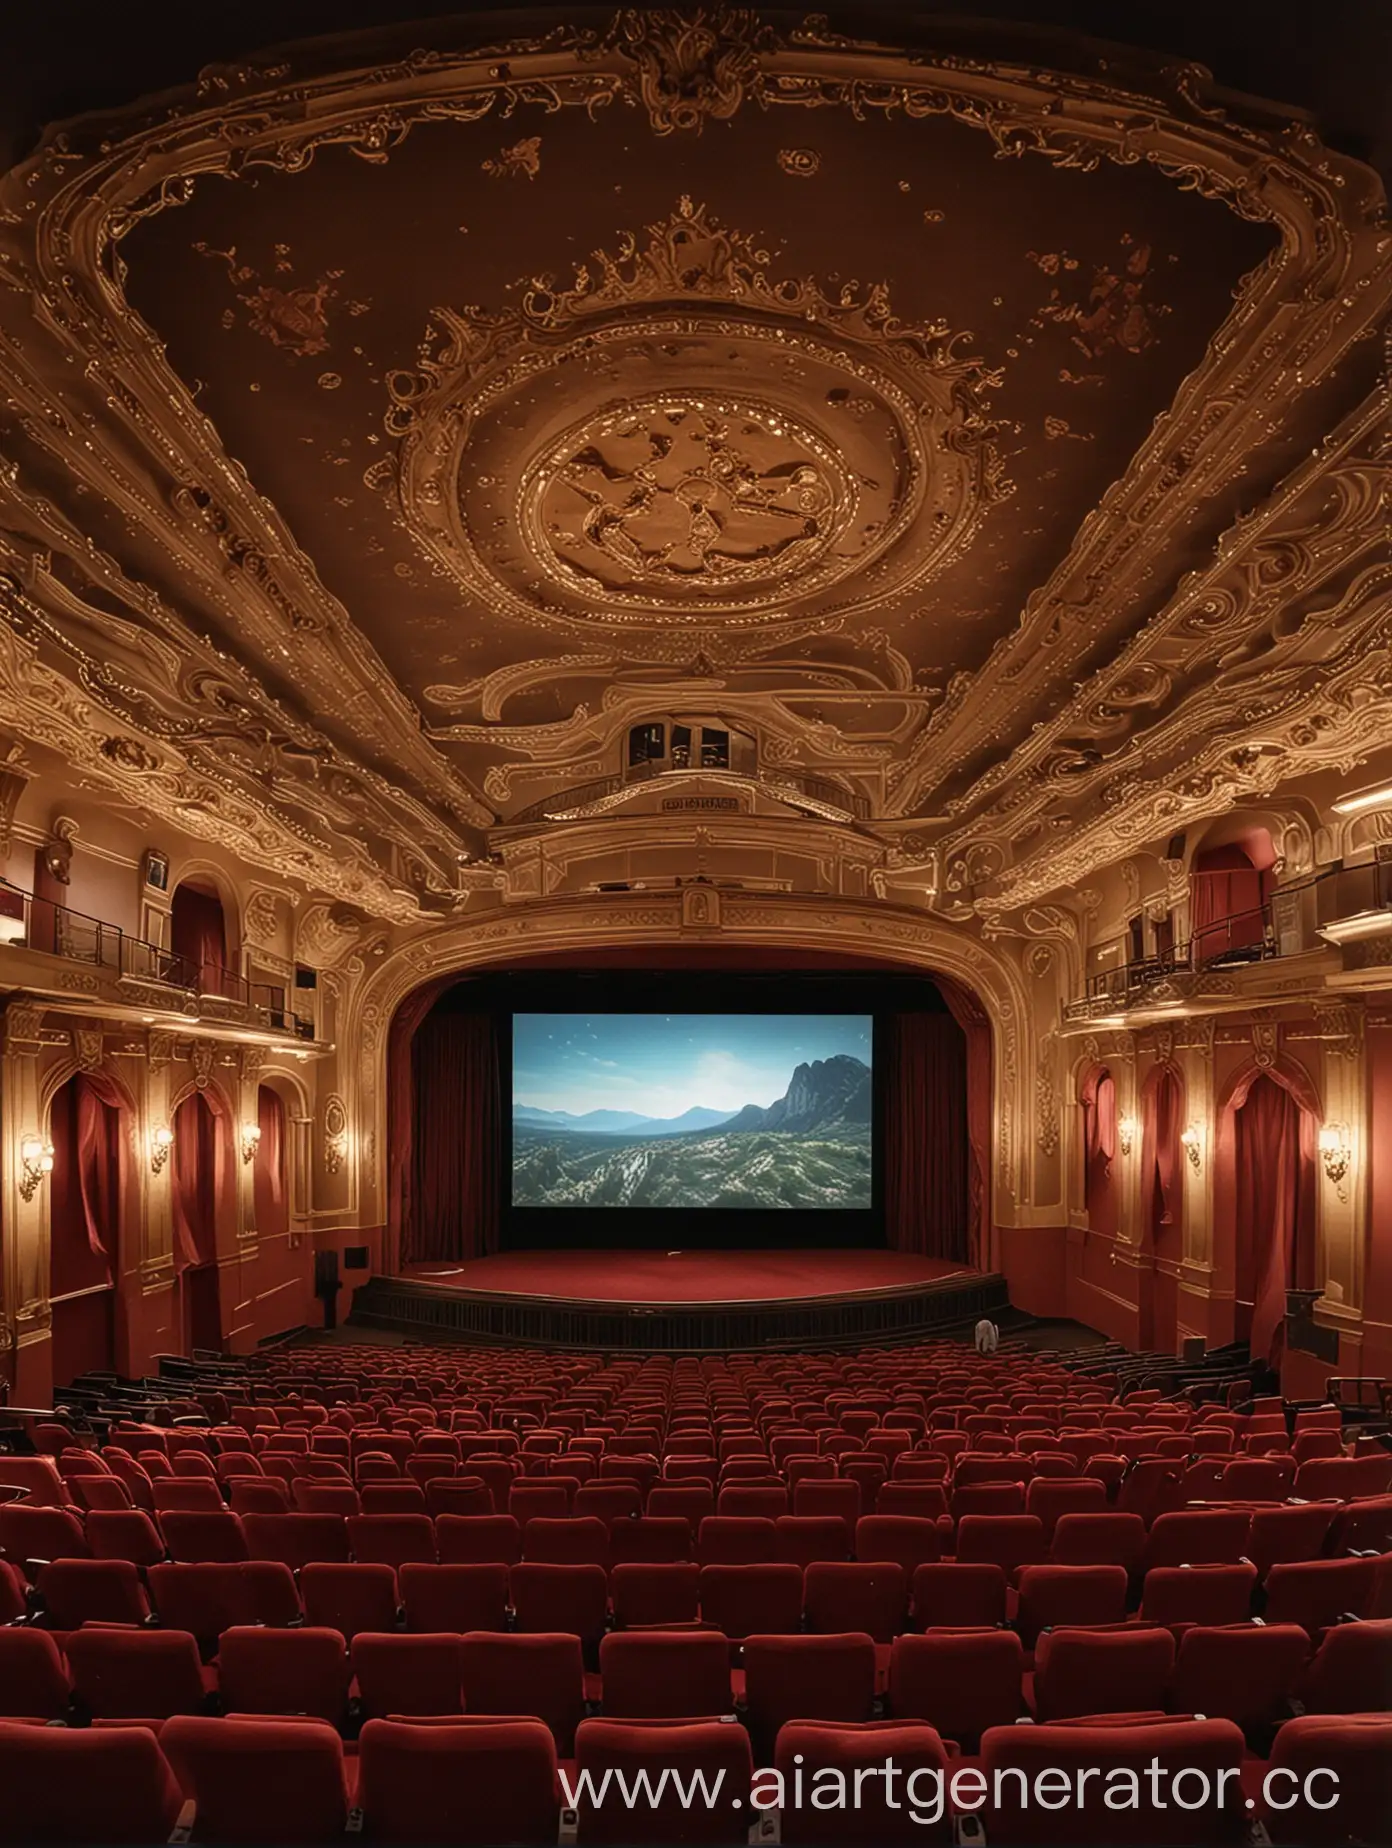 Scenic-Cinema-with-Serene-Ambiance